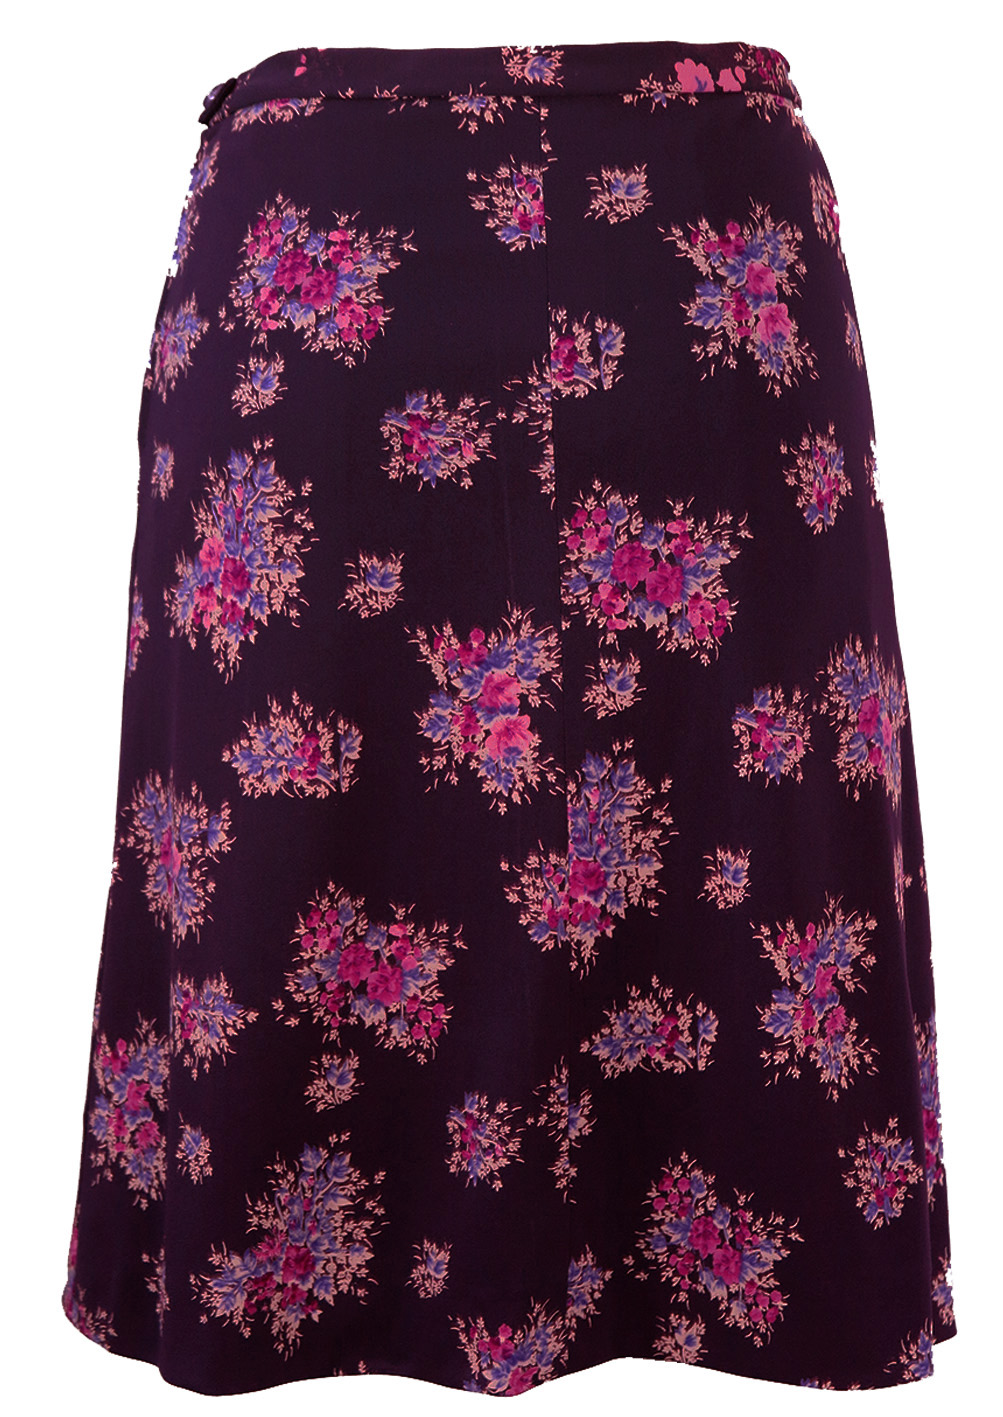 Vintage 1960's A Line Knee Length Purple Floral Skirt - S | Reign Vintage